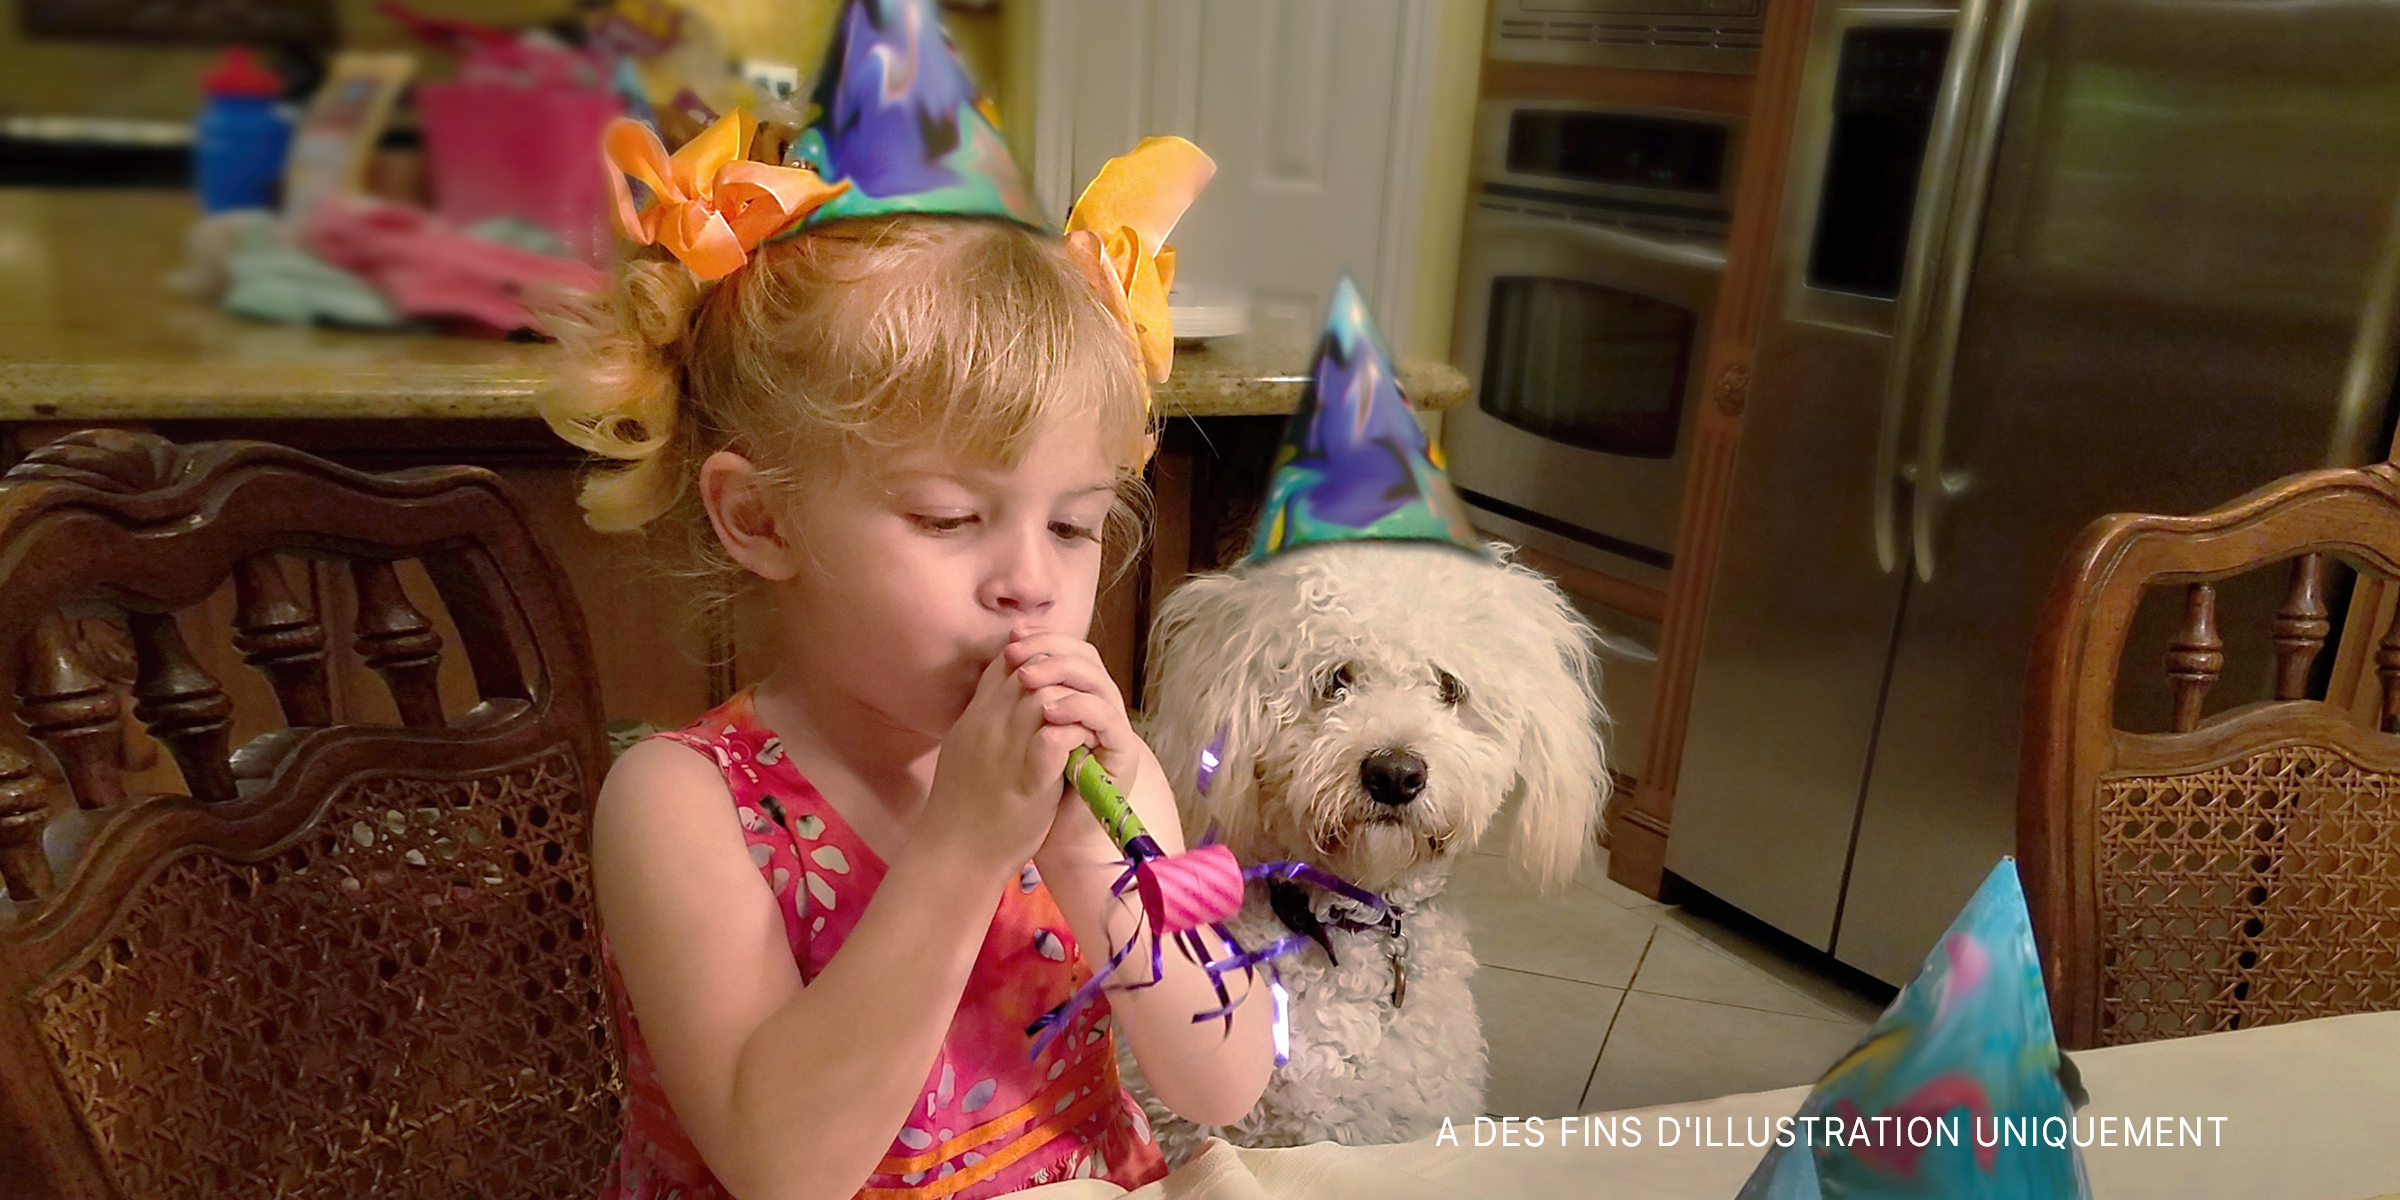 Une petite fille fêtant son anniversaire. | Source : Getty Images